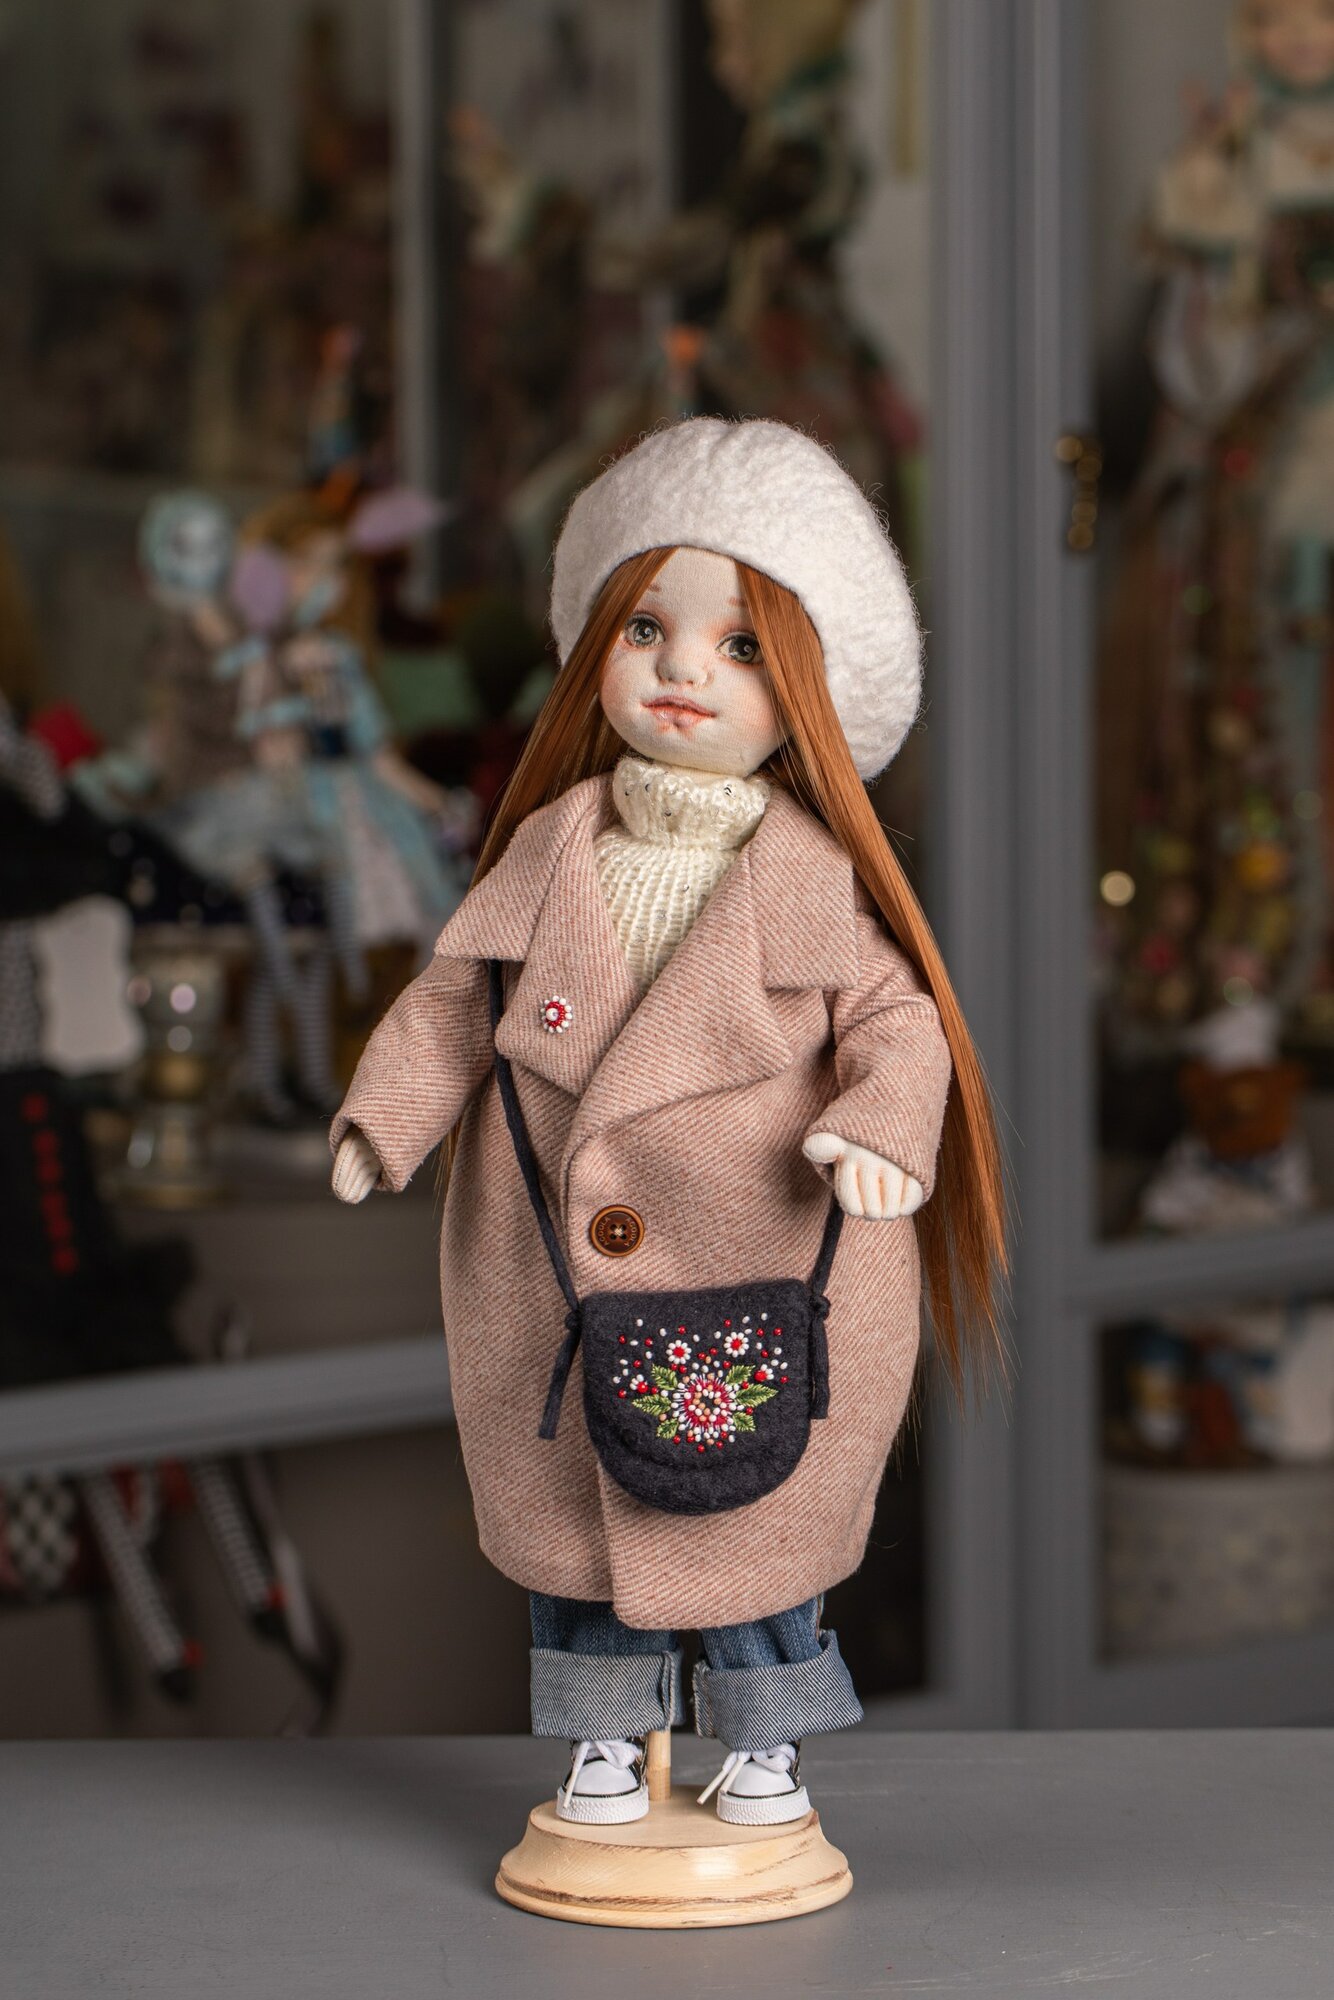 Авторская кукла "Веснушка" ручной работы, текстильная, интерьерная